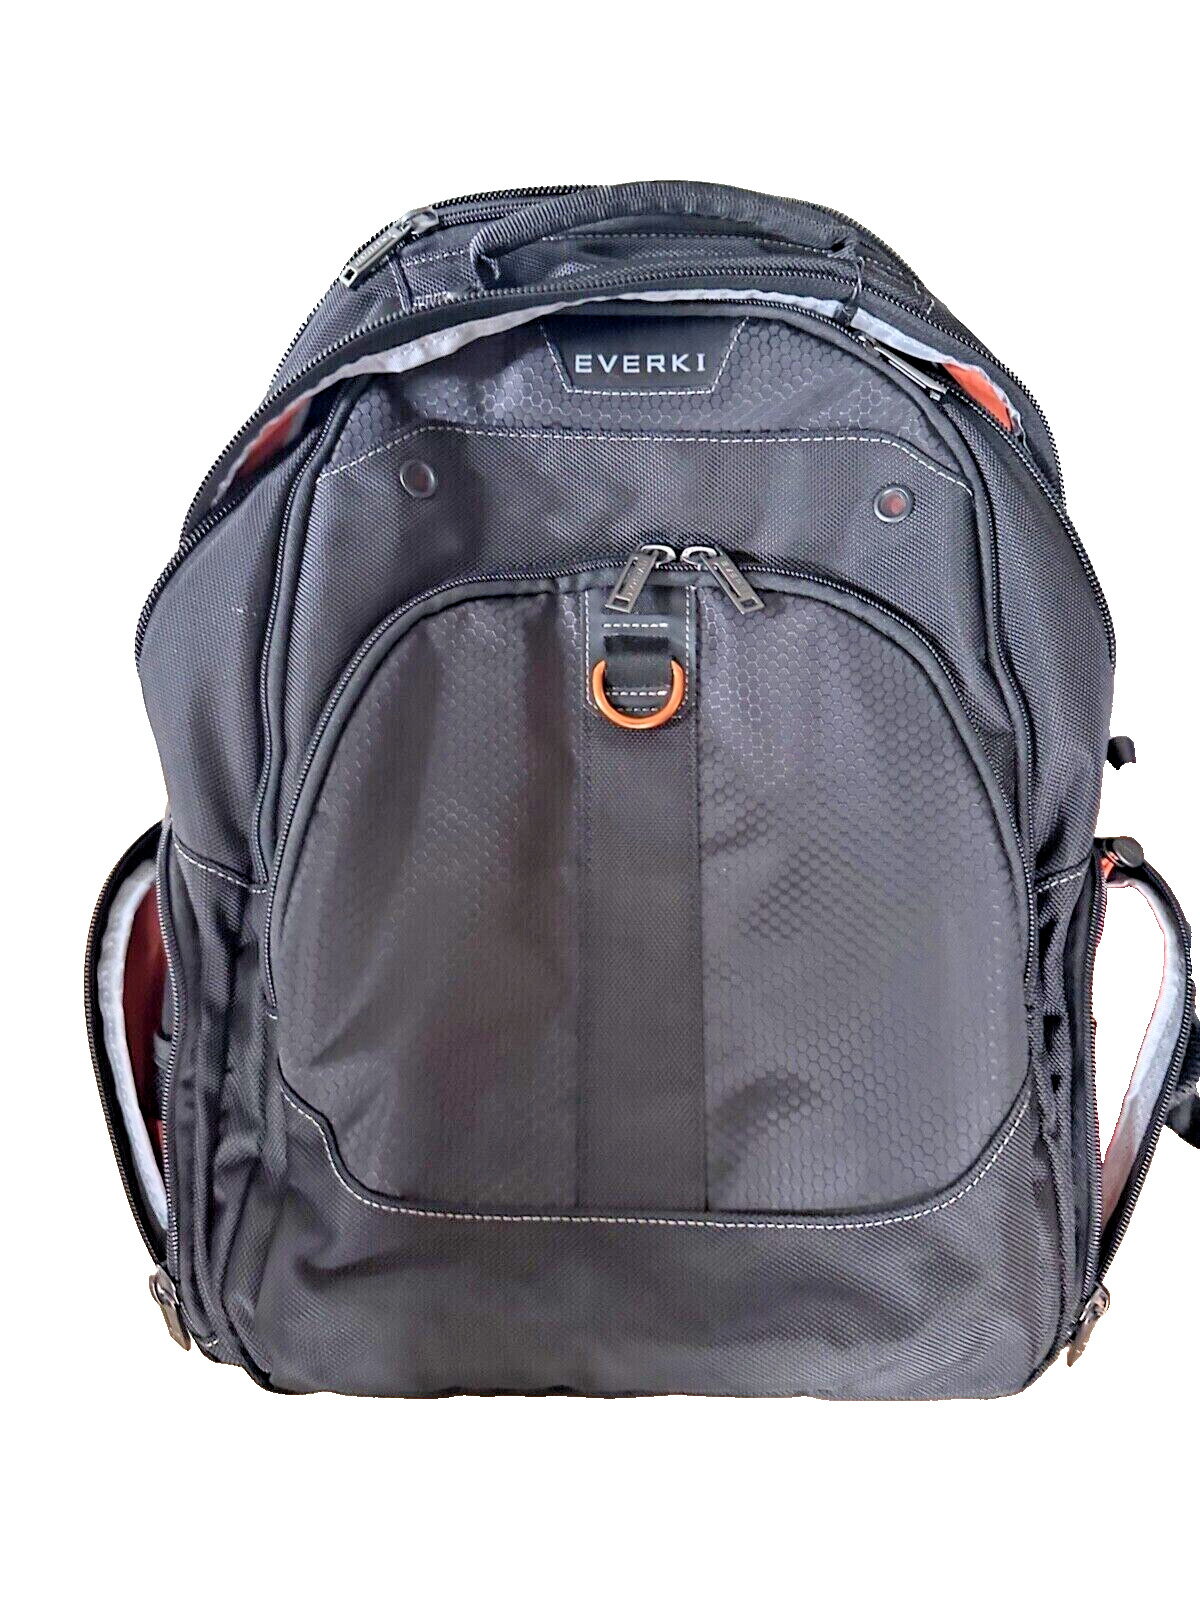 Everki Atlas 2 latops travel business backpack